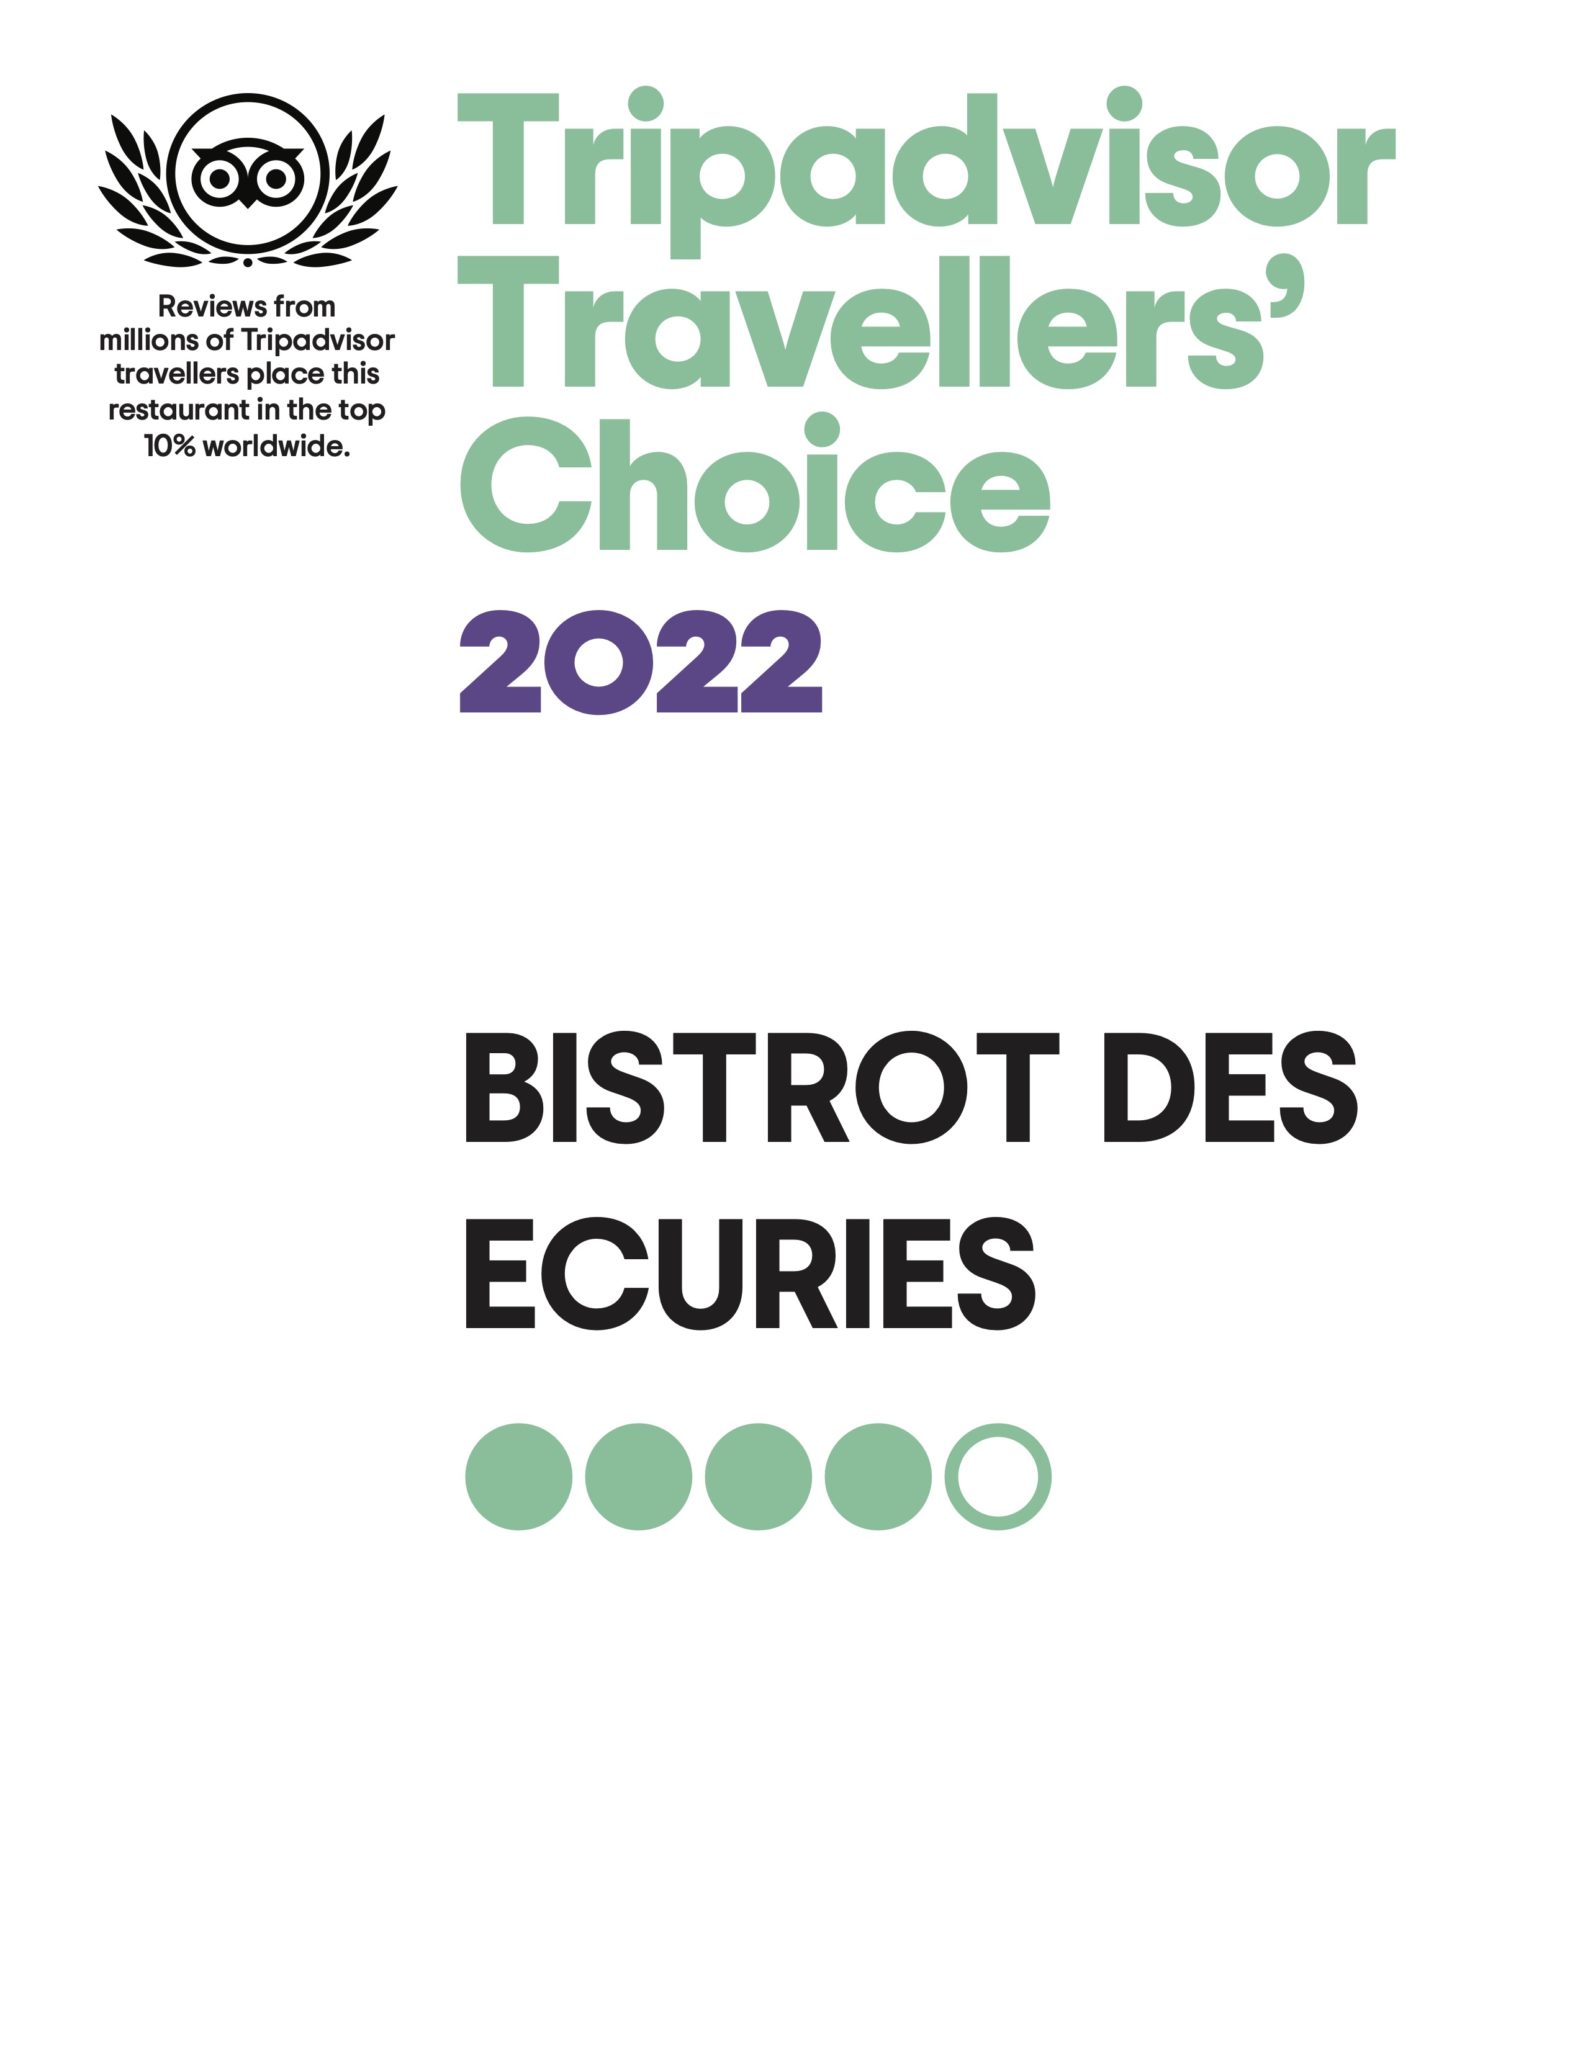 tripadvisor-travellers-choice-2022